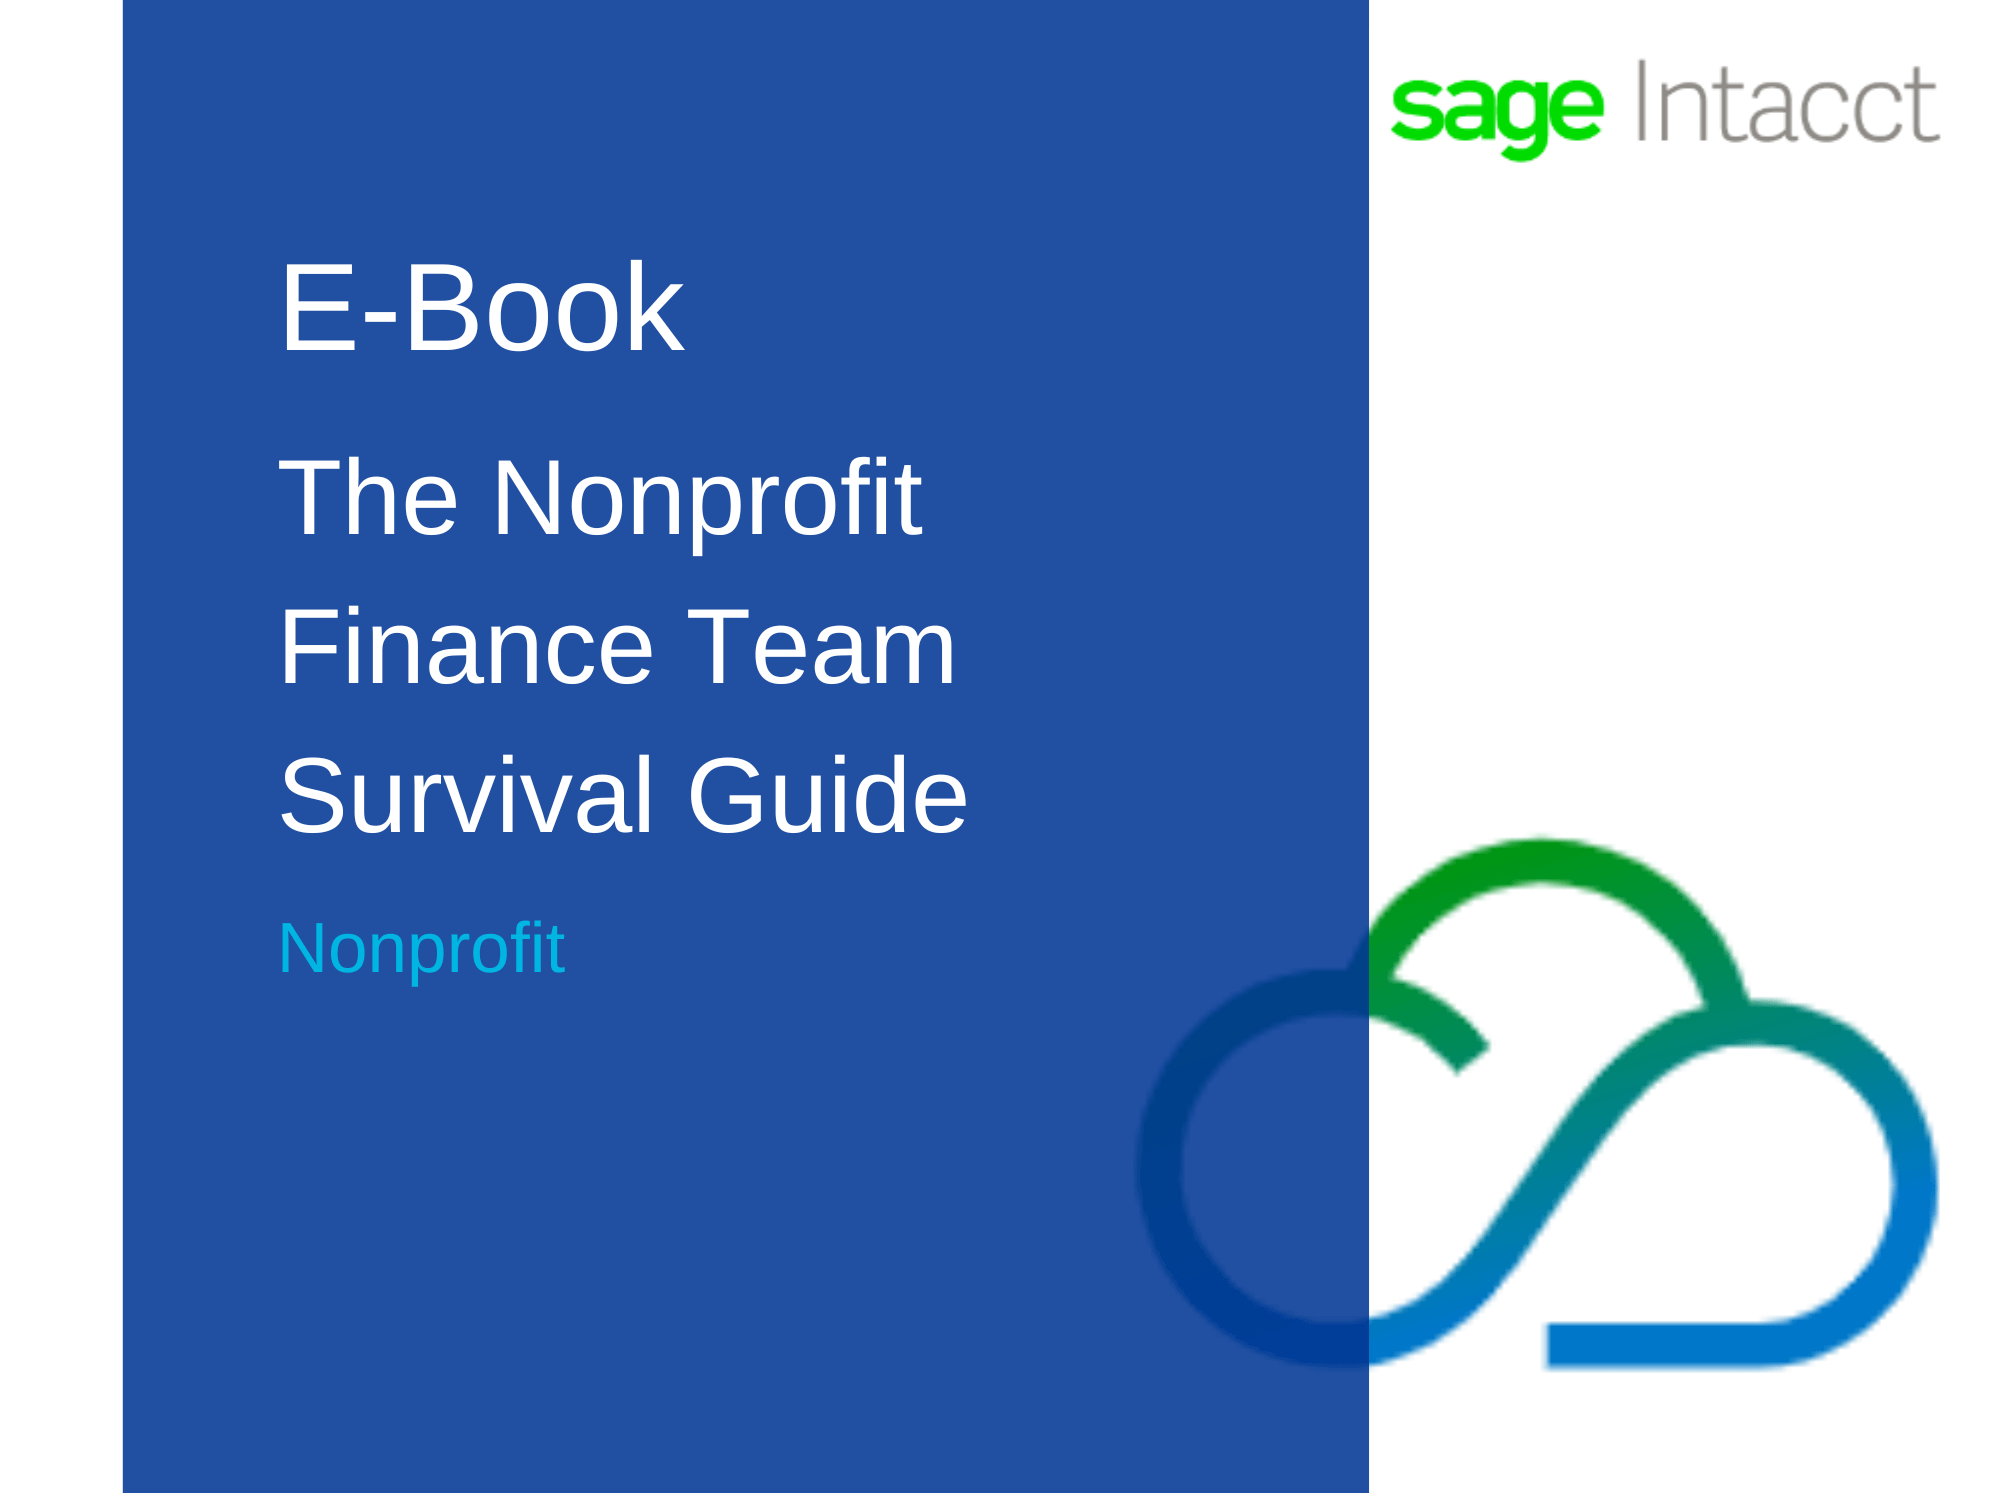 E-Book: The Nonprofit Finance Team Survival Guide